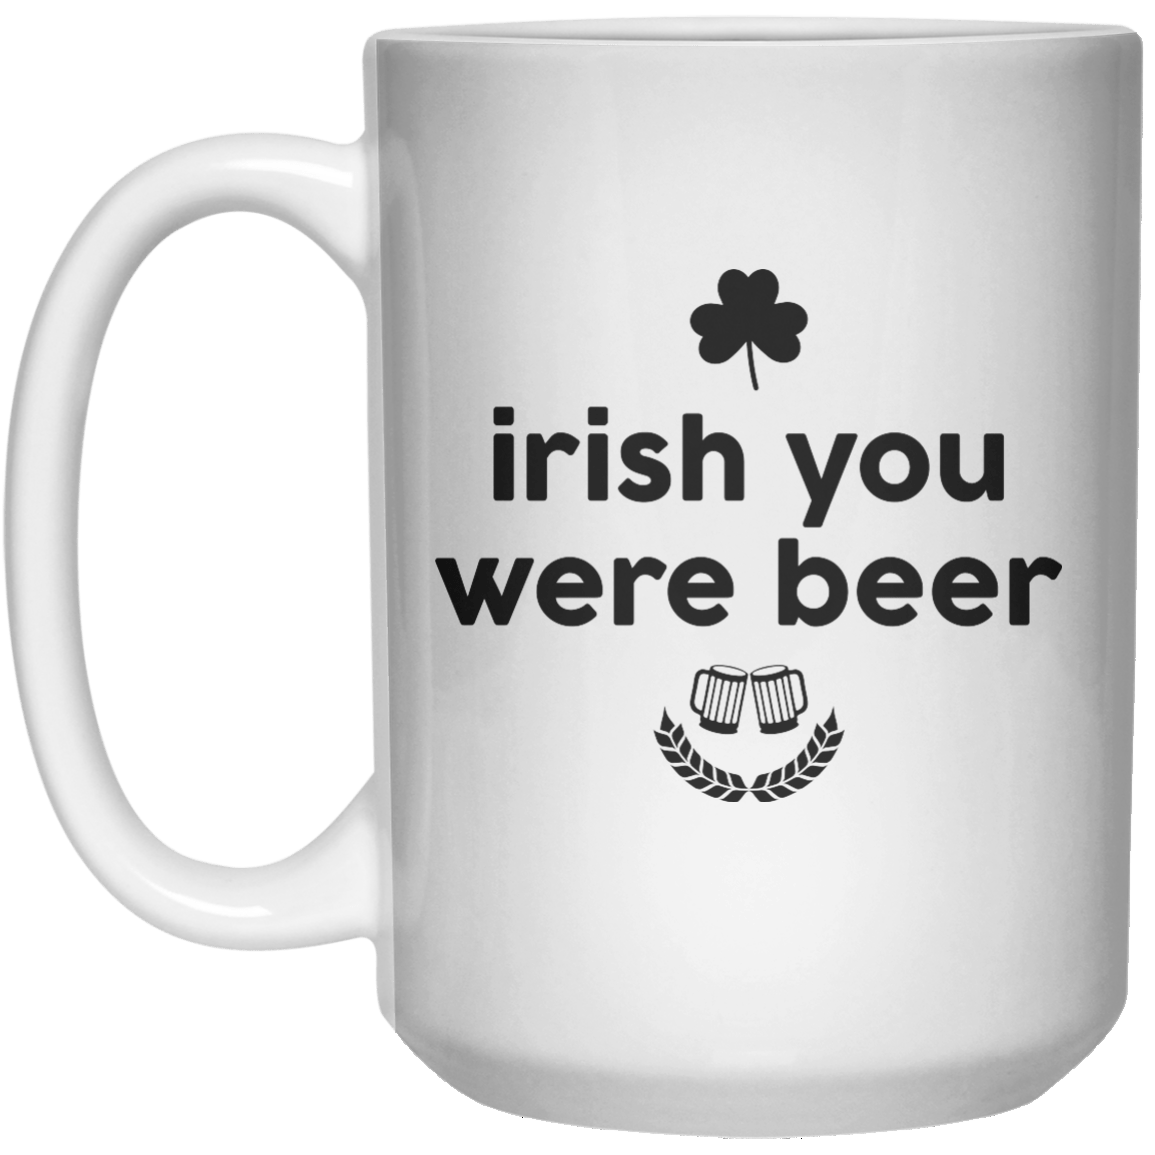 irish you were beer MUG  Mug - 15oz - Shirtoopia